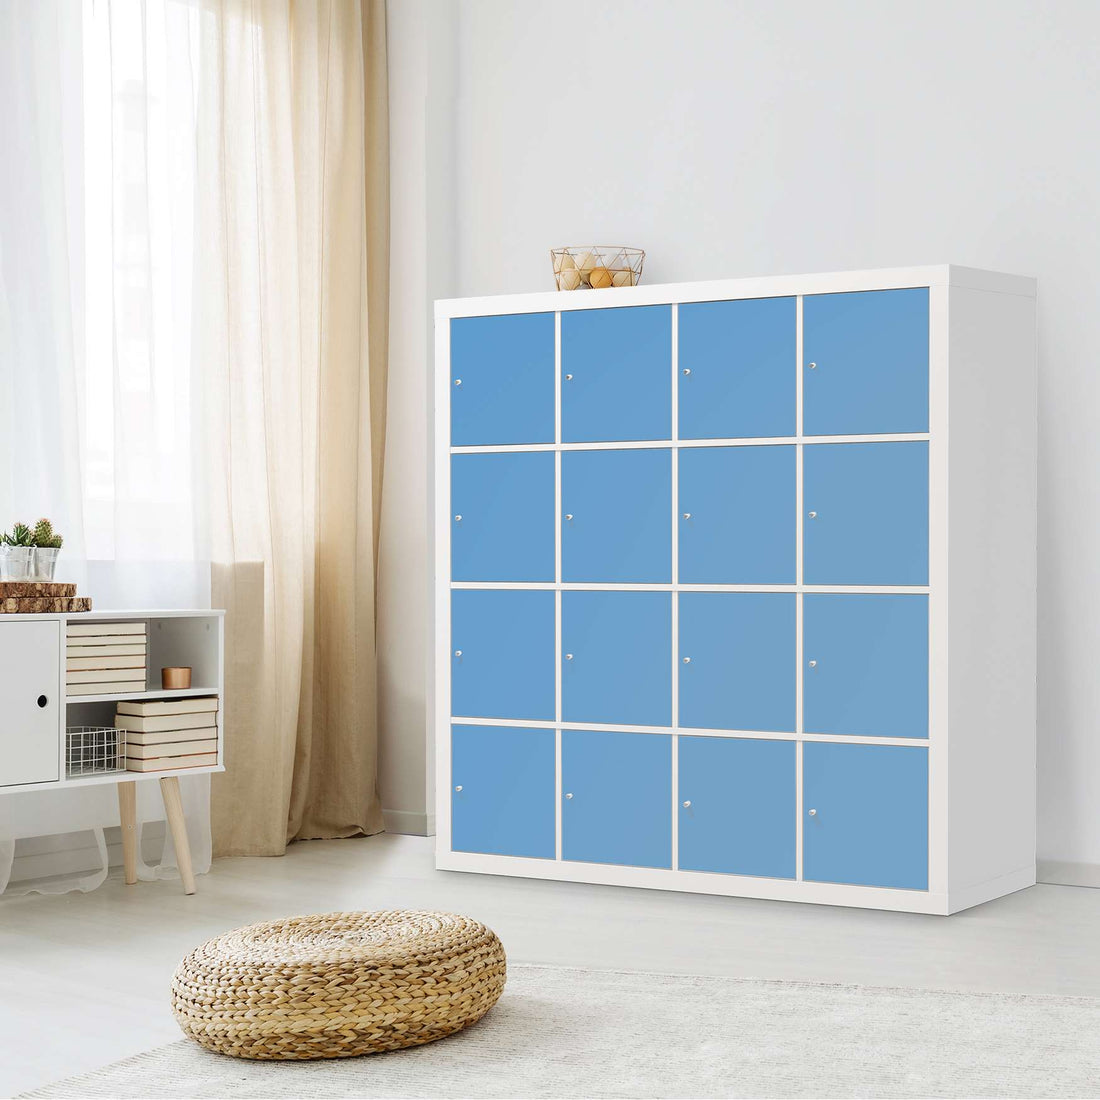 Selbstklebende Folie Blau Light - IKEA Expedit Regal 16 Türen - Wohnzimmer